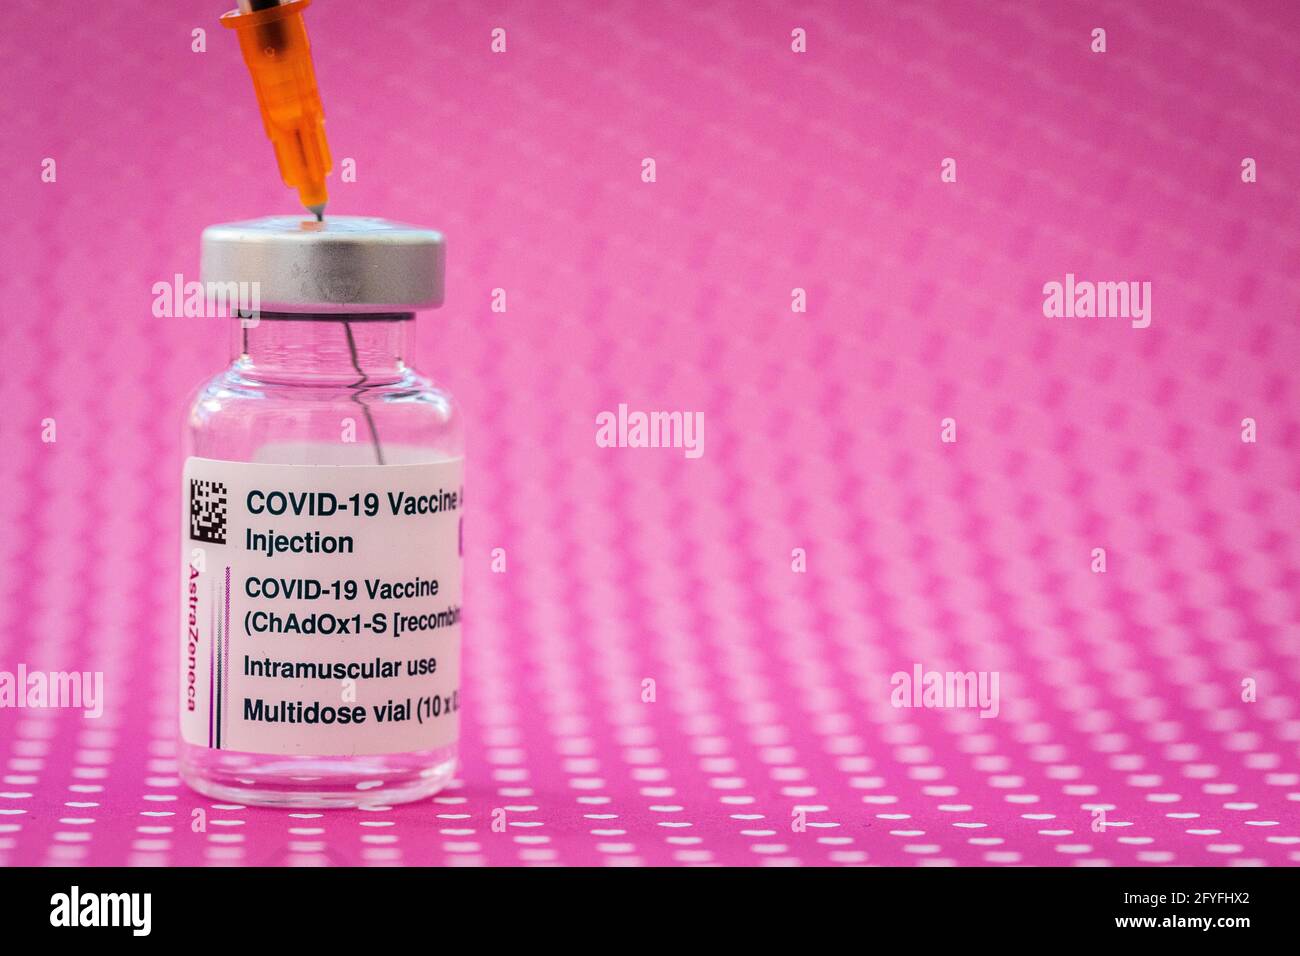 AstraZeneca ® Vaccin contra Covid-19, marzo de 2021, Francia. Foto de stock